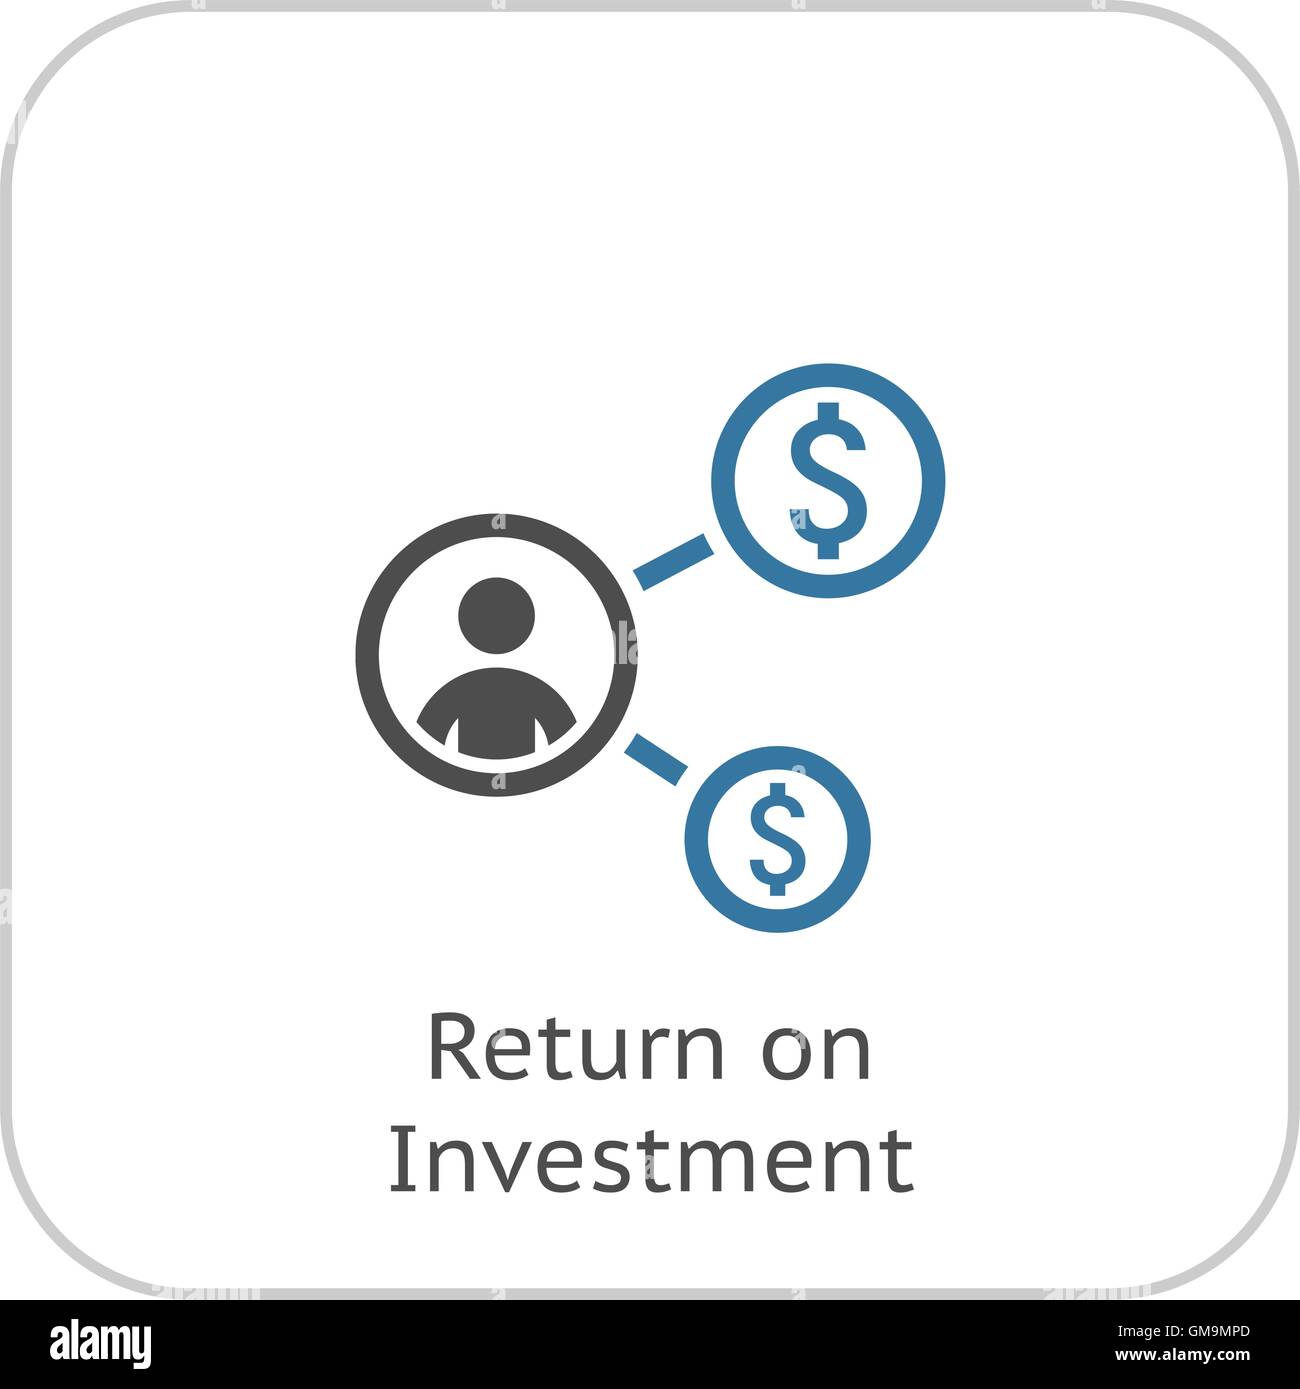 Return Sie on Investment-Symbol. Business-Konzept. Flaches Design. Stock Vektor